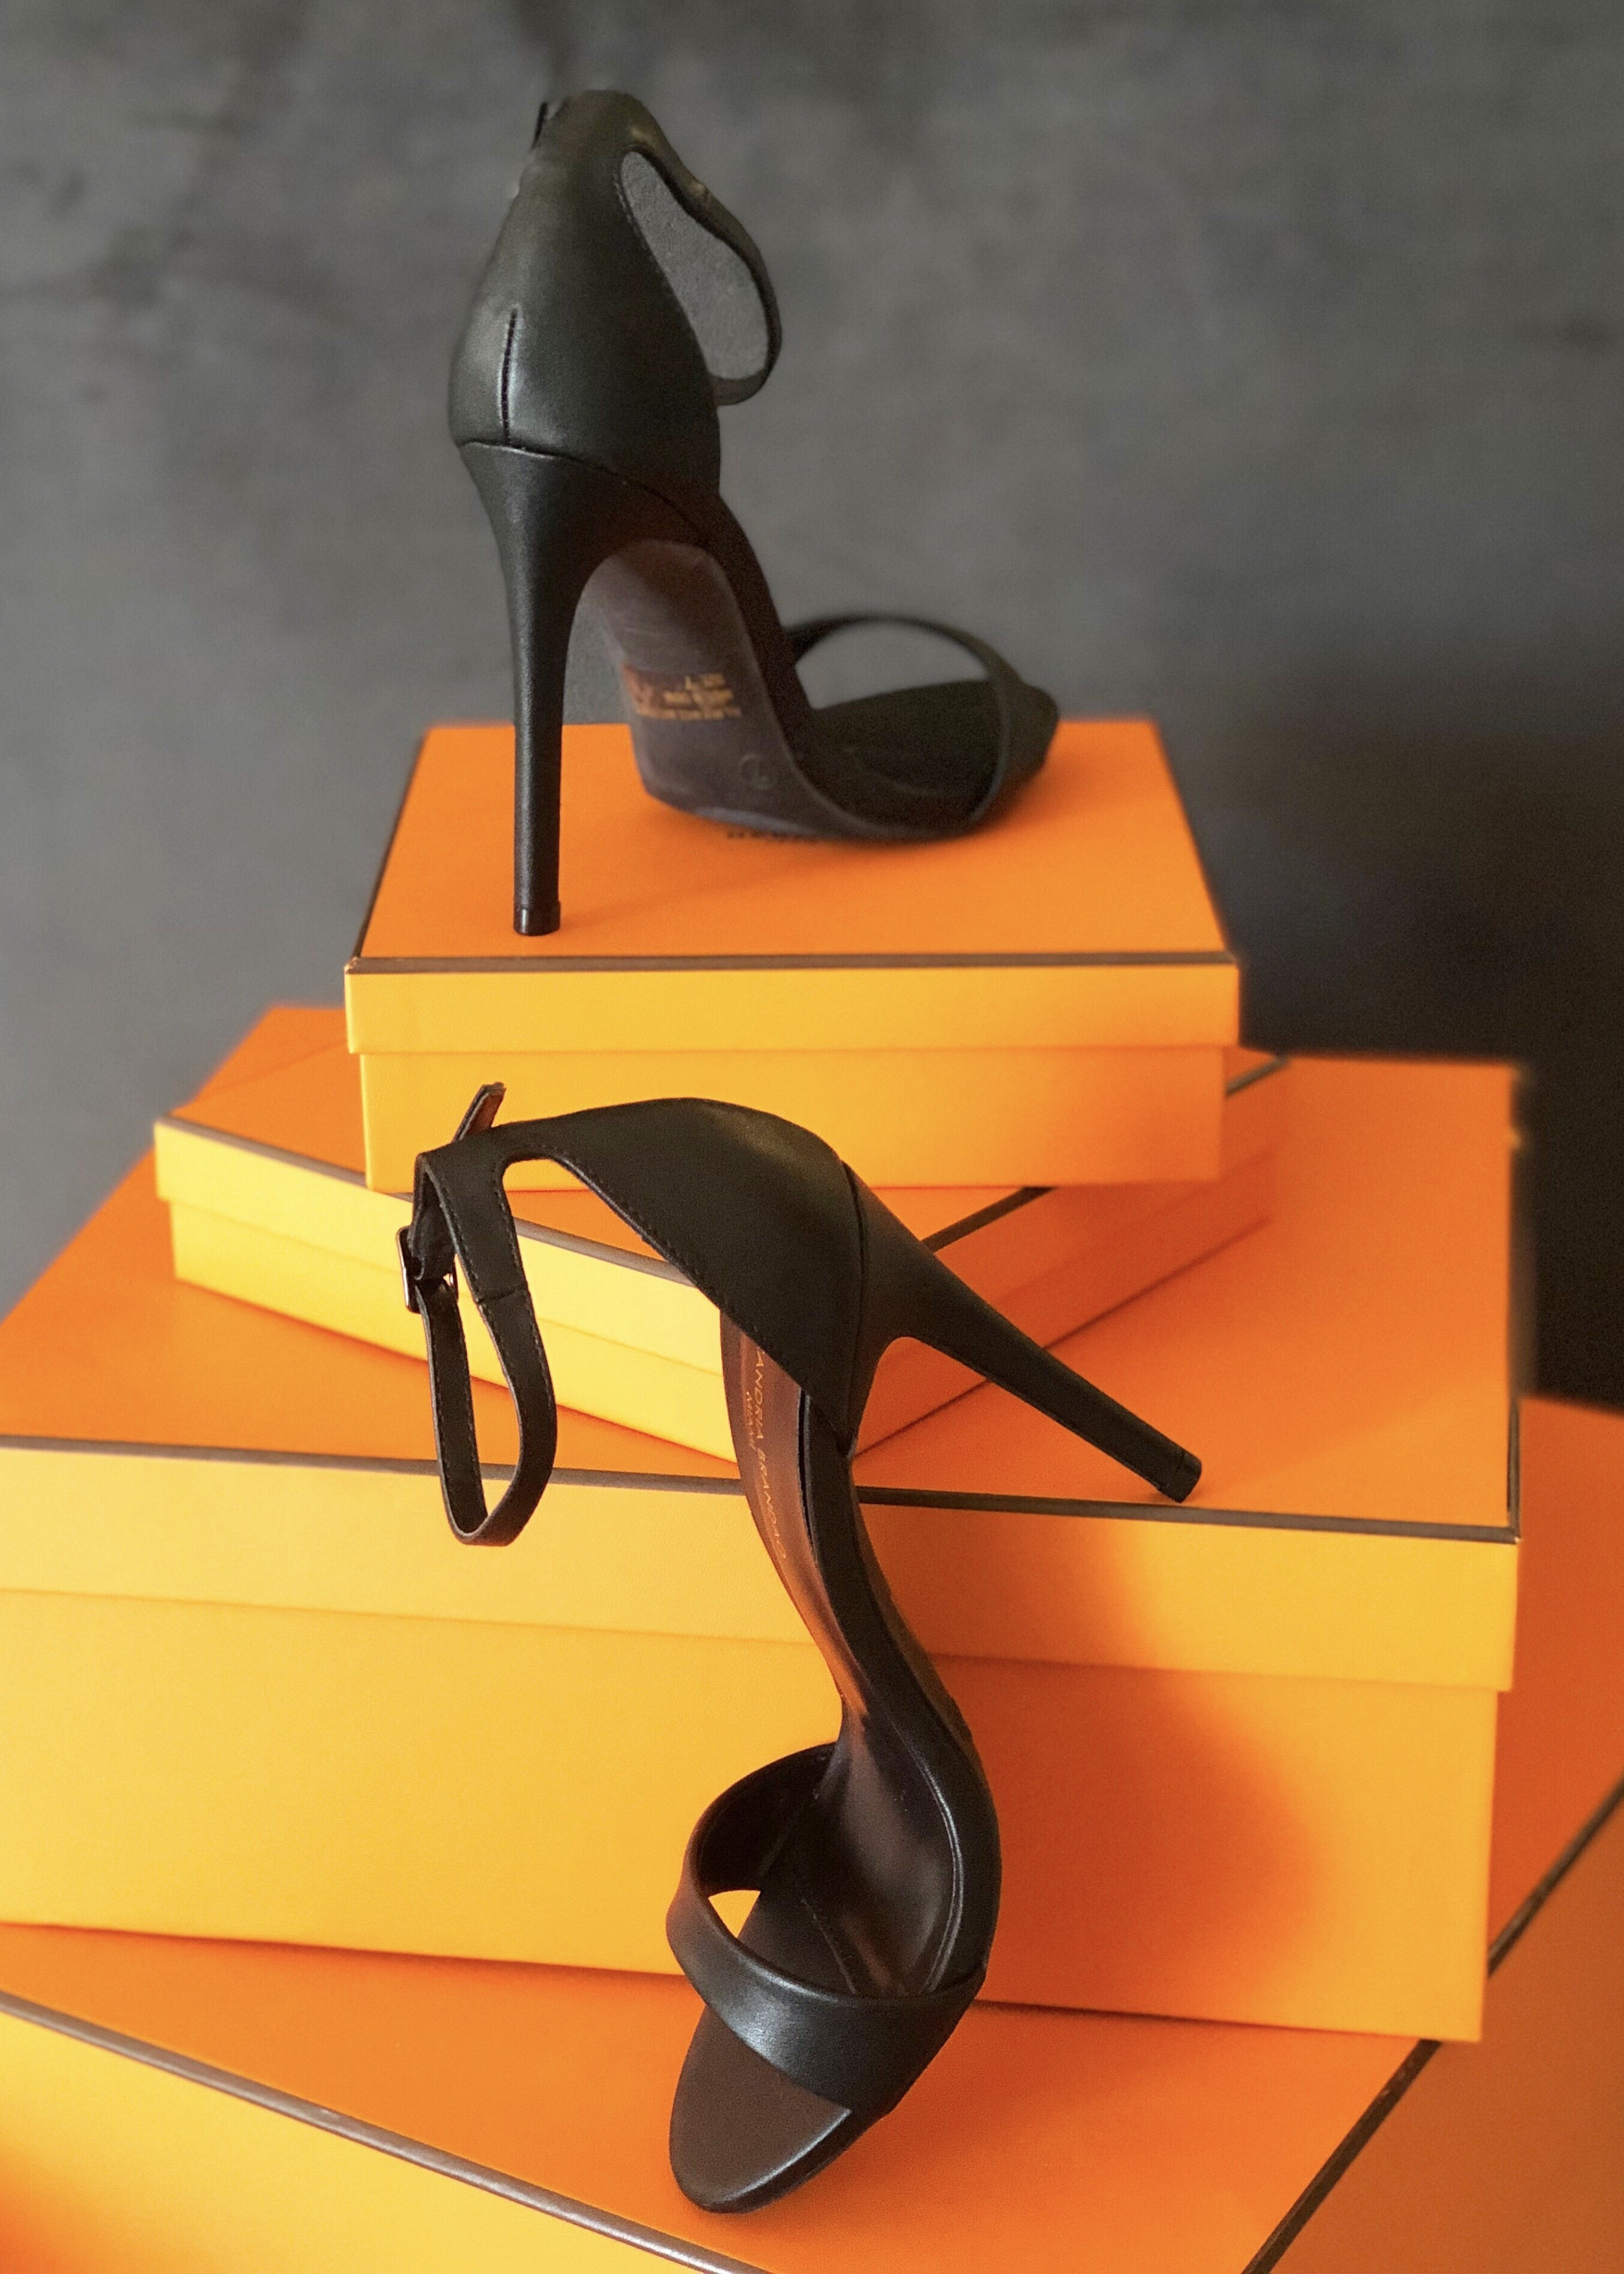 Our Black Ali sandal heels propped up on orange boxes.